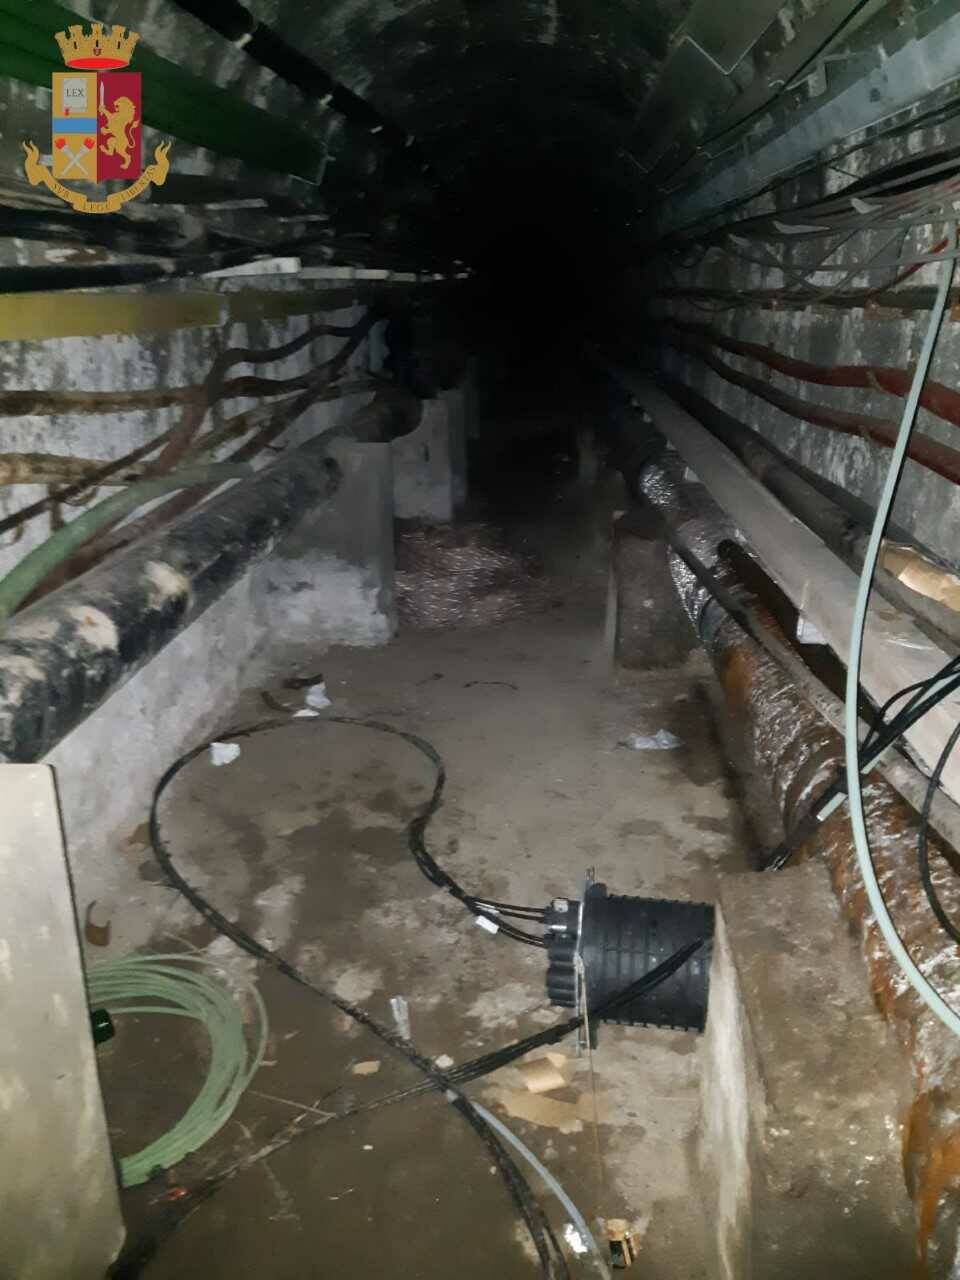 Roma, si calano in gallerie sotterranee per rubare cavi telefonici: 3 uomini nei guai